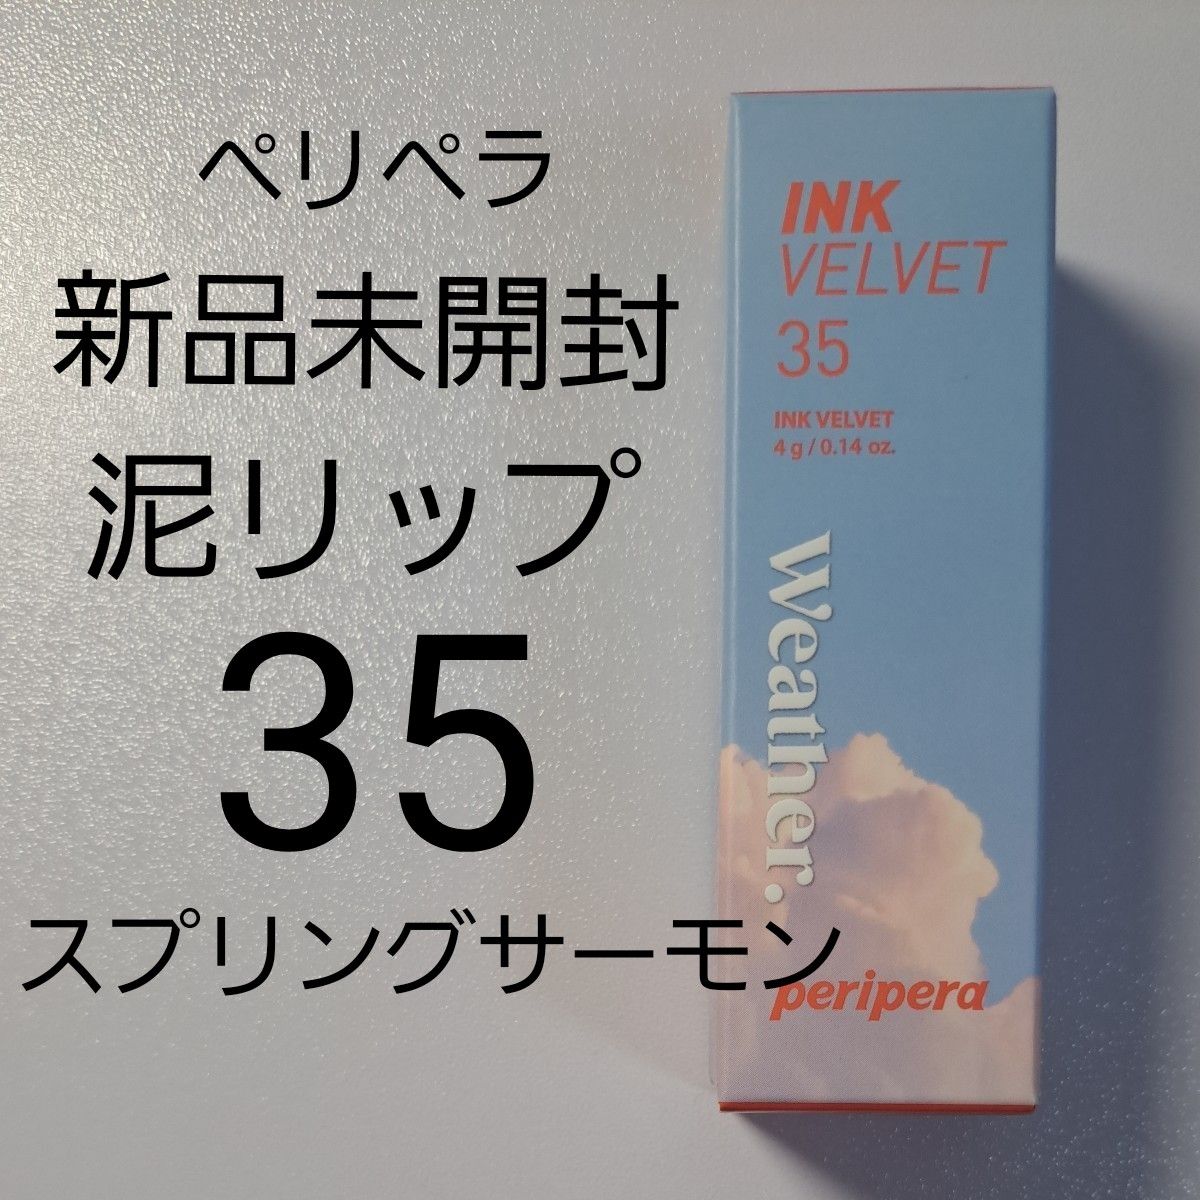 【新品未開封】peripera ペリペラ インクベルベット 35 スプリングサーモン 4g